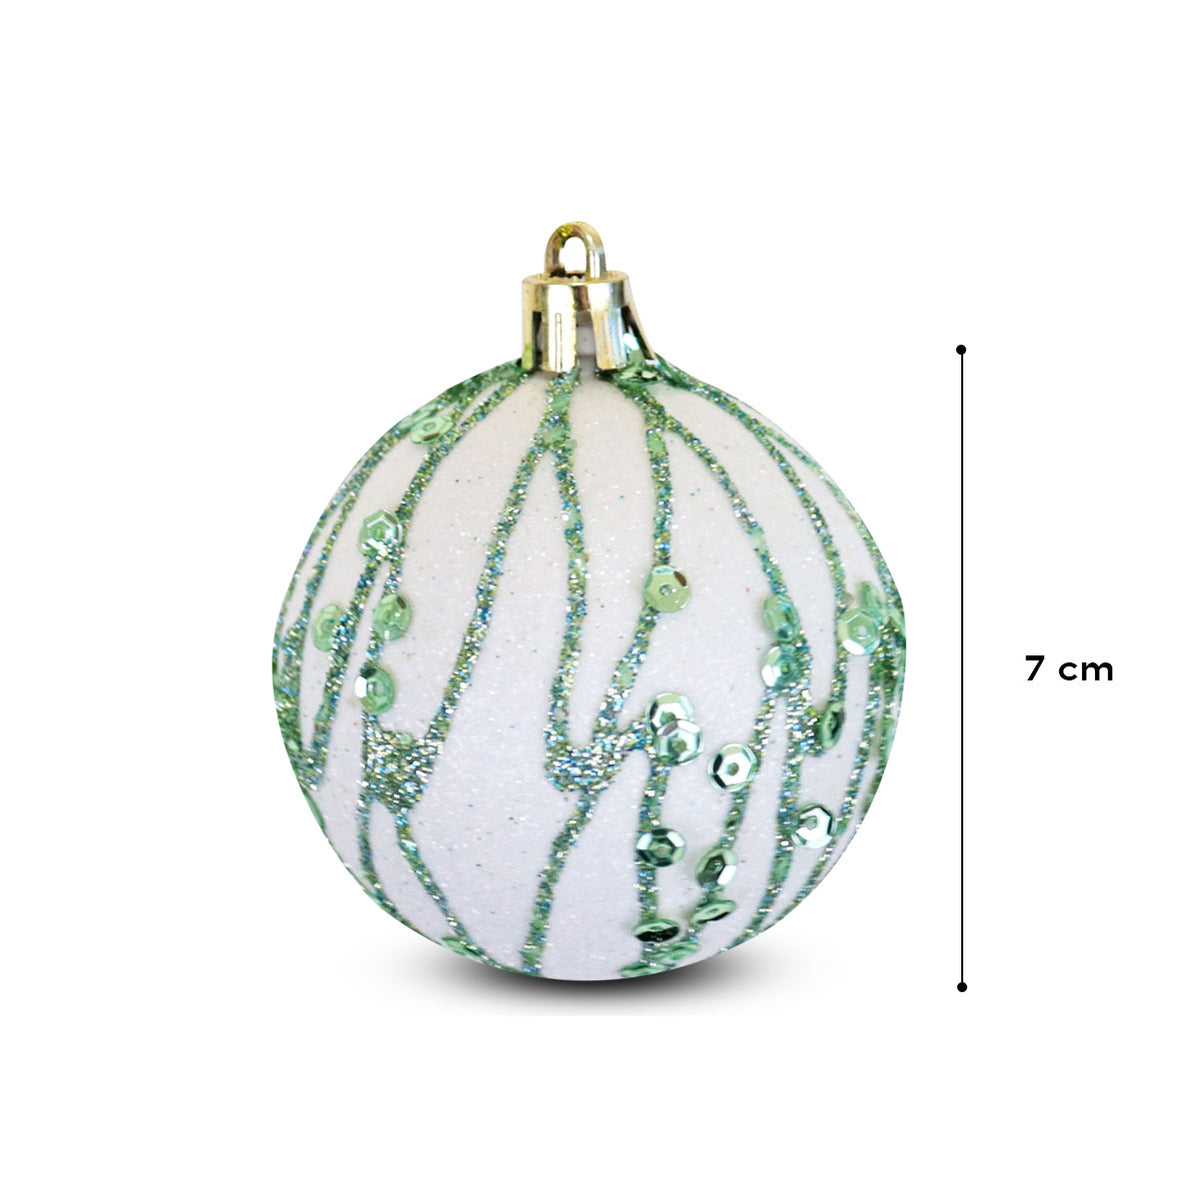 Esferas Navideñas Decoradas Verde/Blanco, 2 piezas. – Waldo's